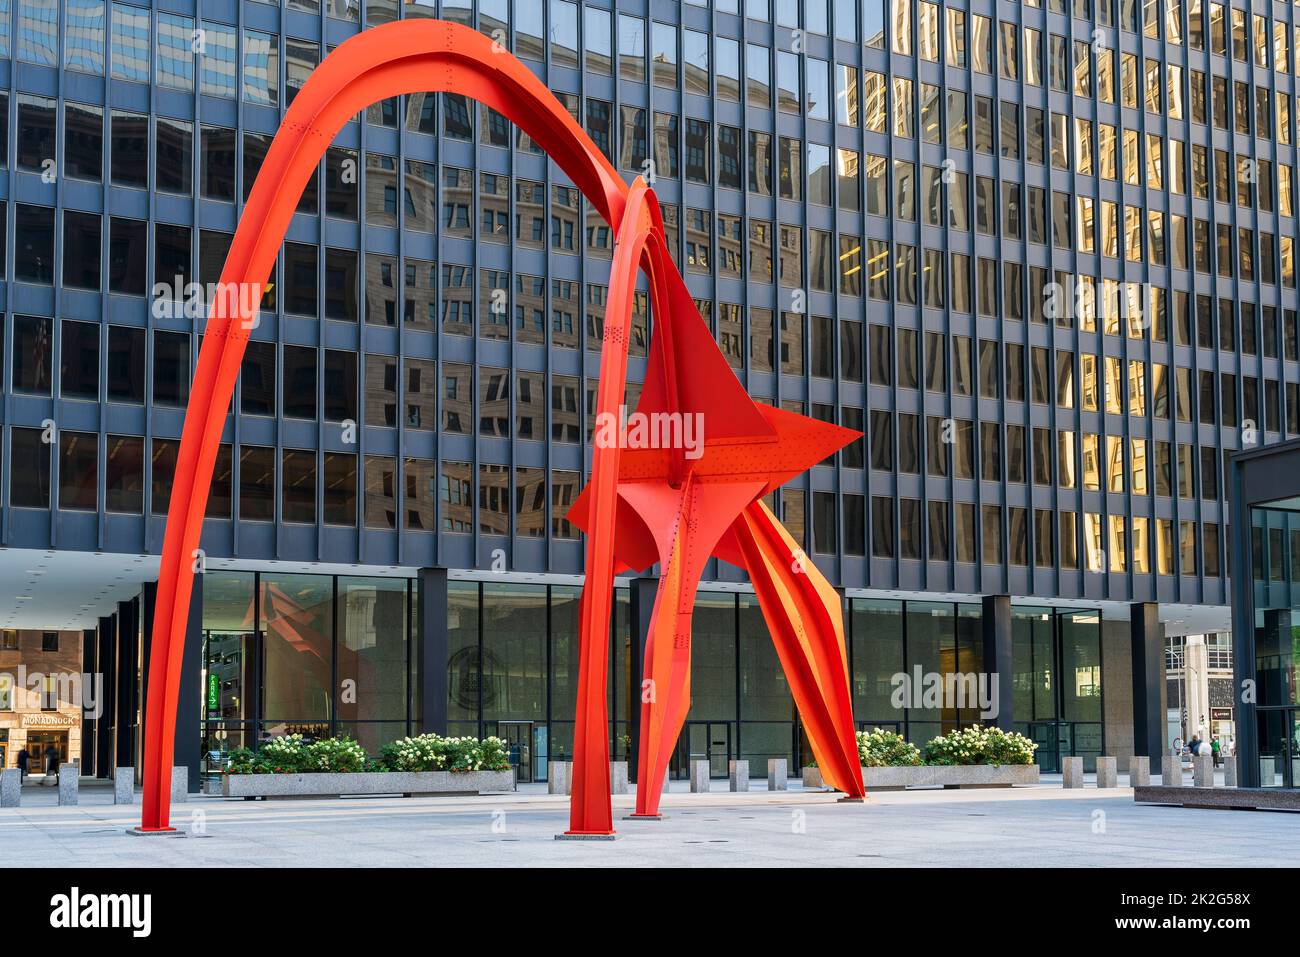 Escultura del flamenco creada por el artista estadounidense Alexander Calder, Chicago, Illinois, EE.UU Foto de stock